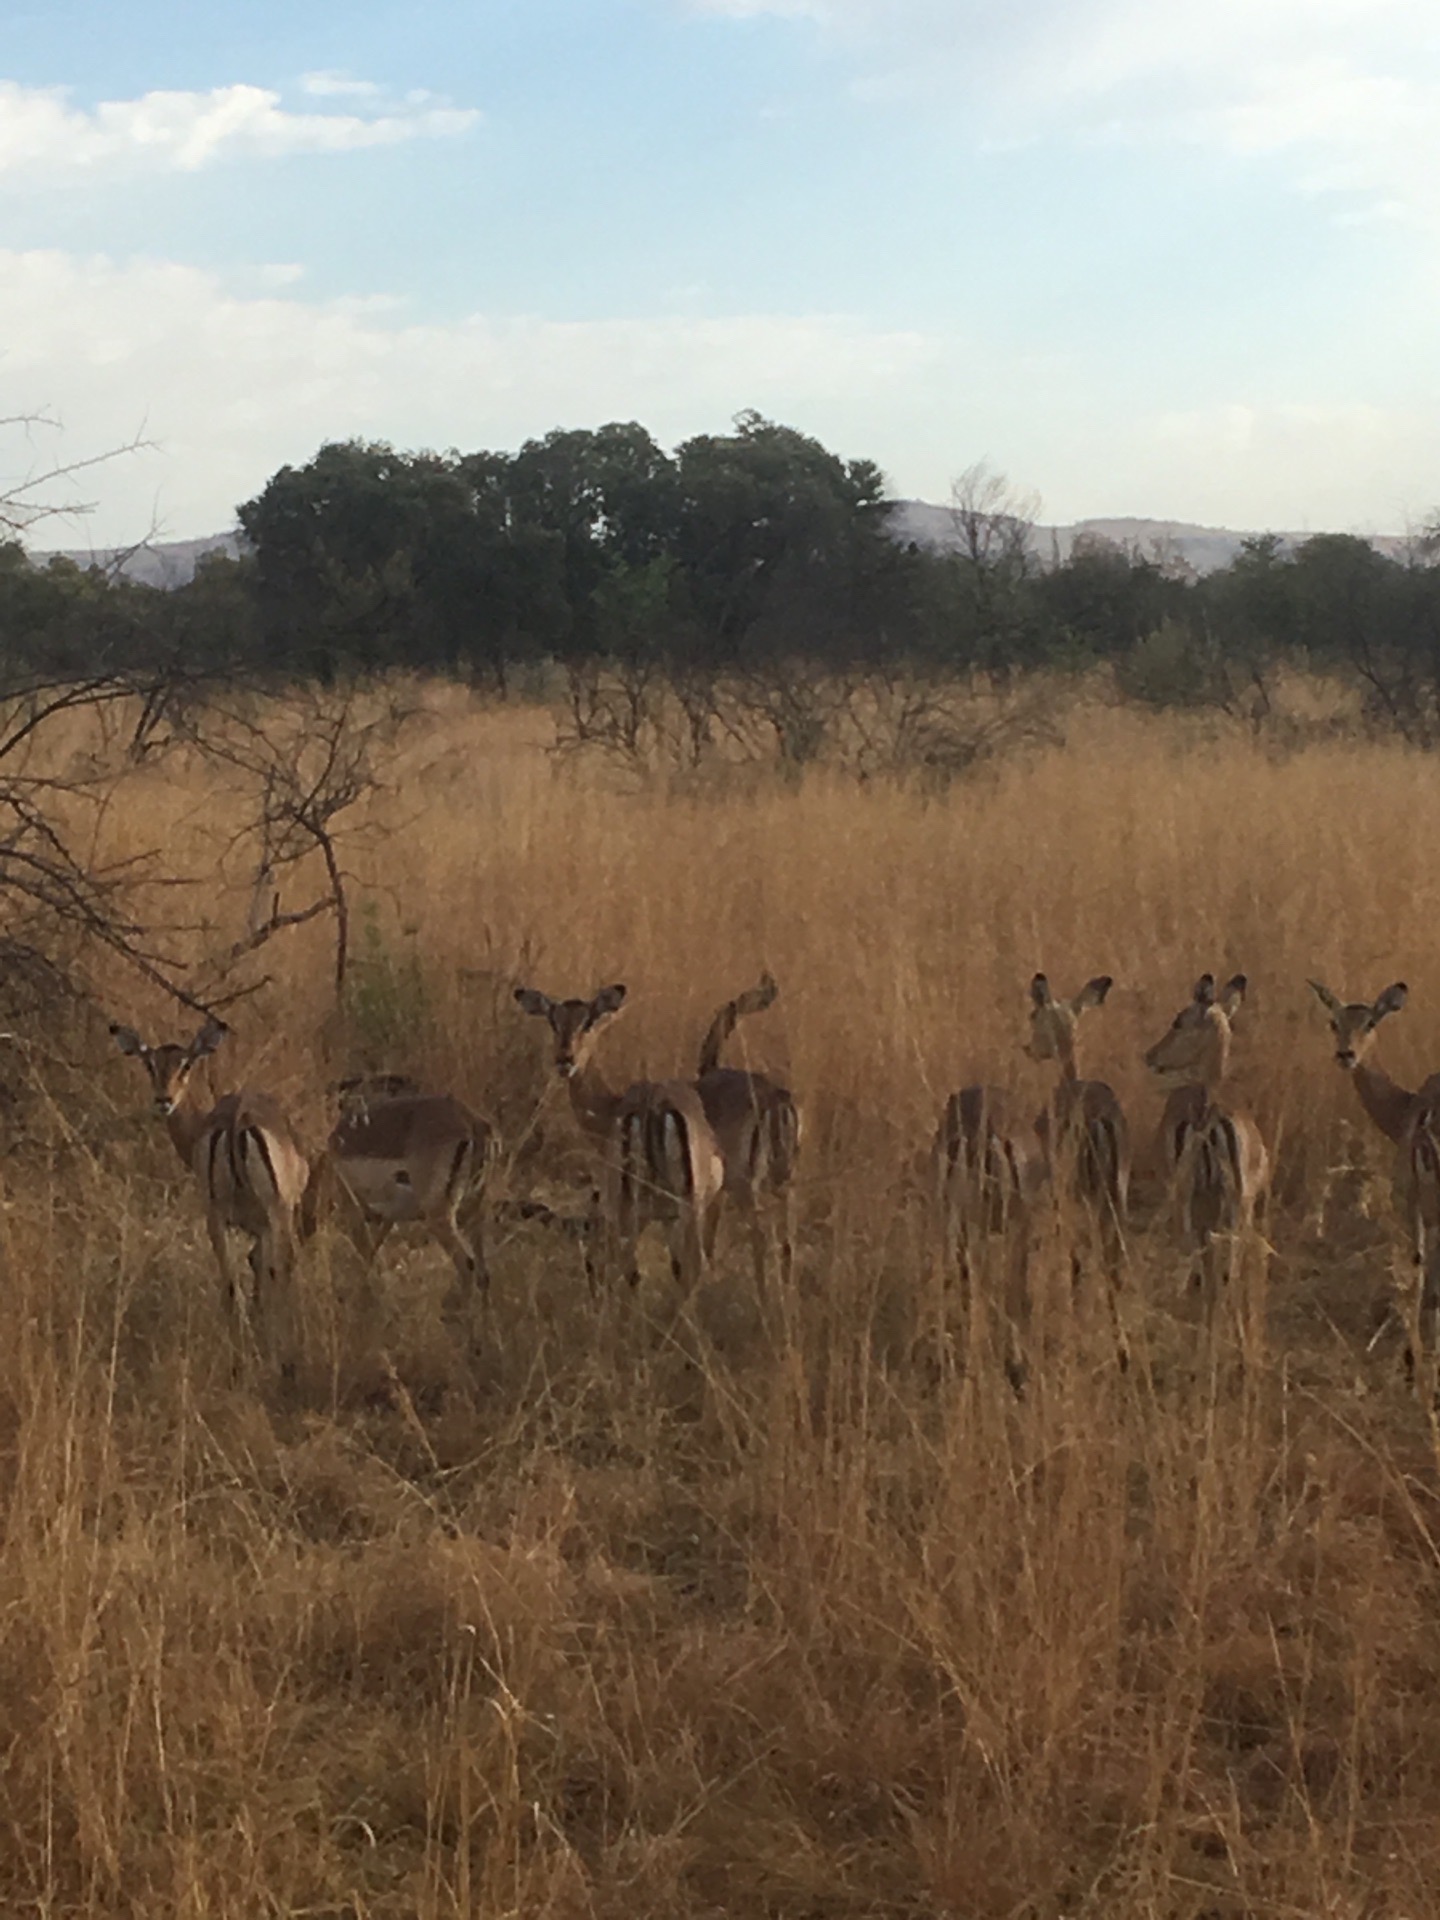 当我们的游览车靠近一群可爱的小鹿的时候，小鹿警觉的抬起头来，担心的看向我们，我们也只能远远的拿起手机